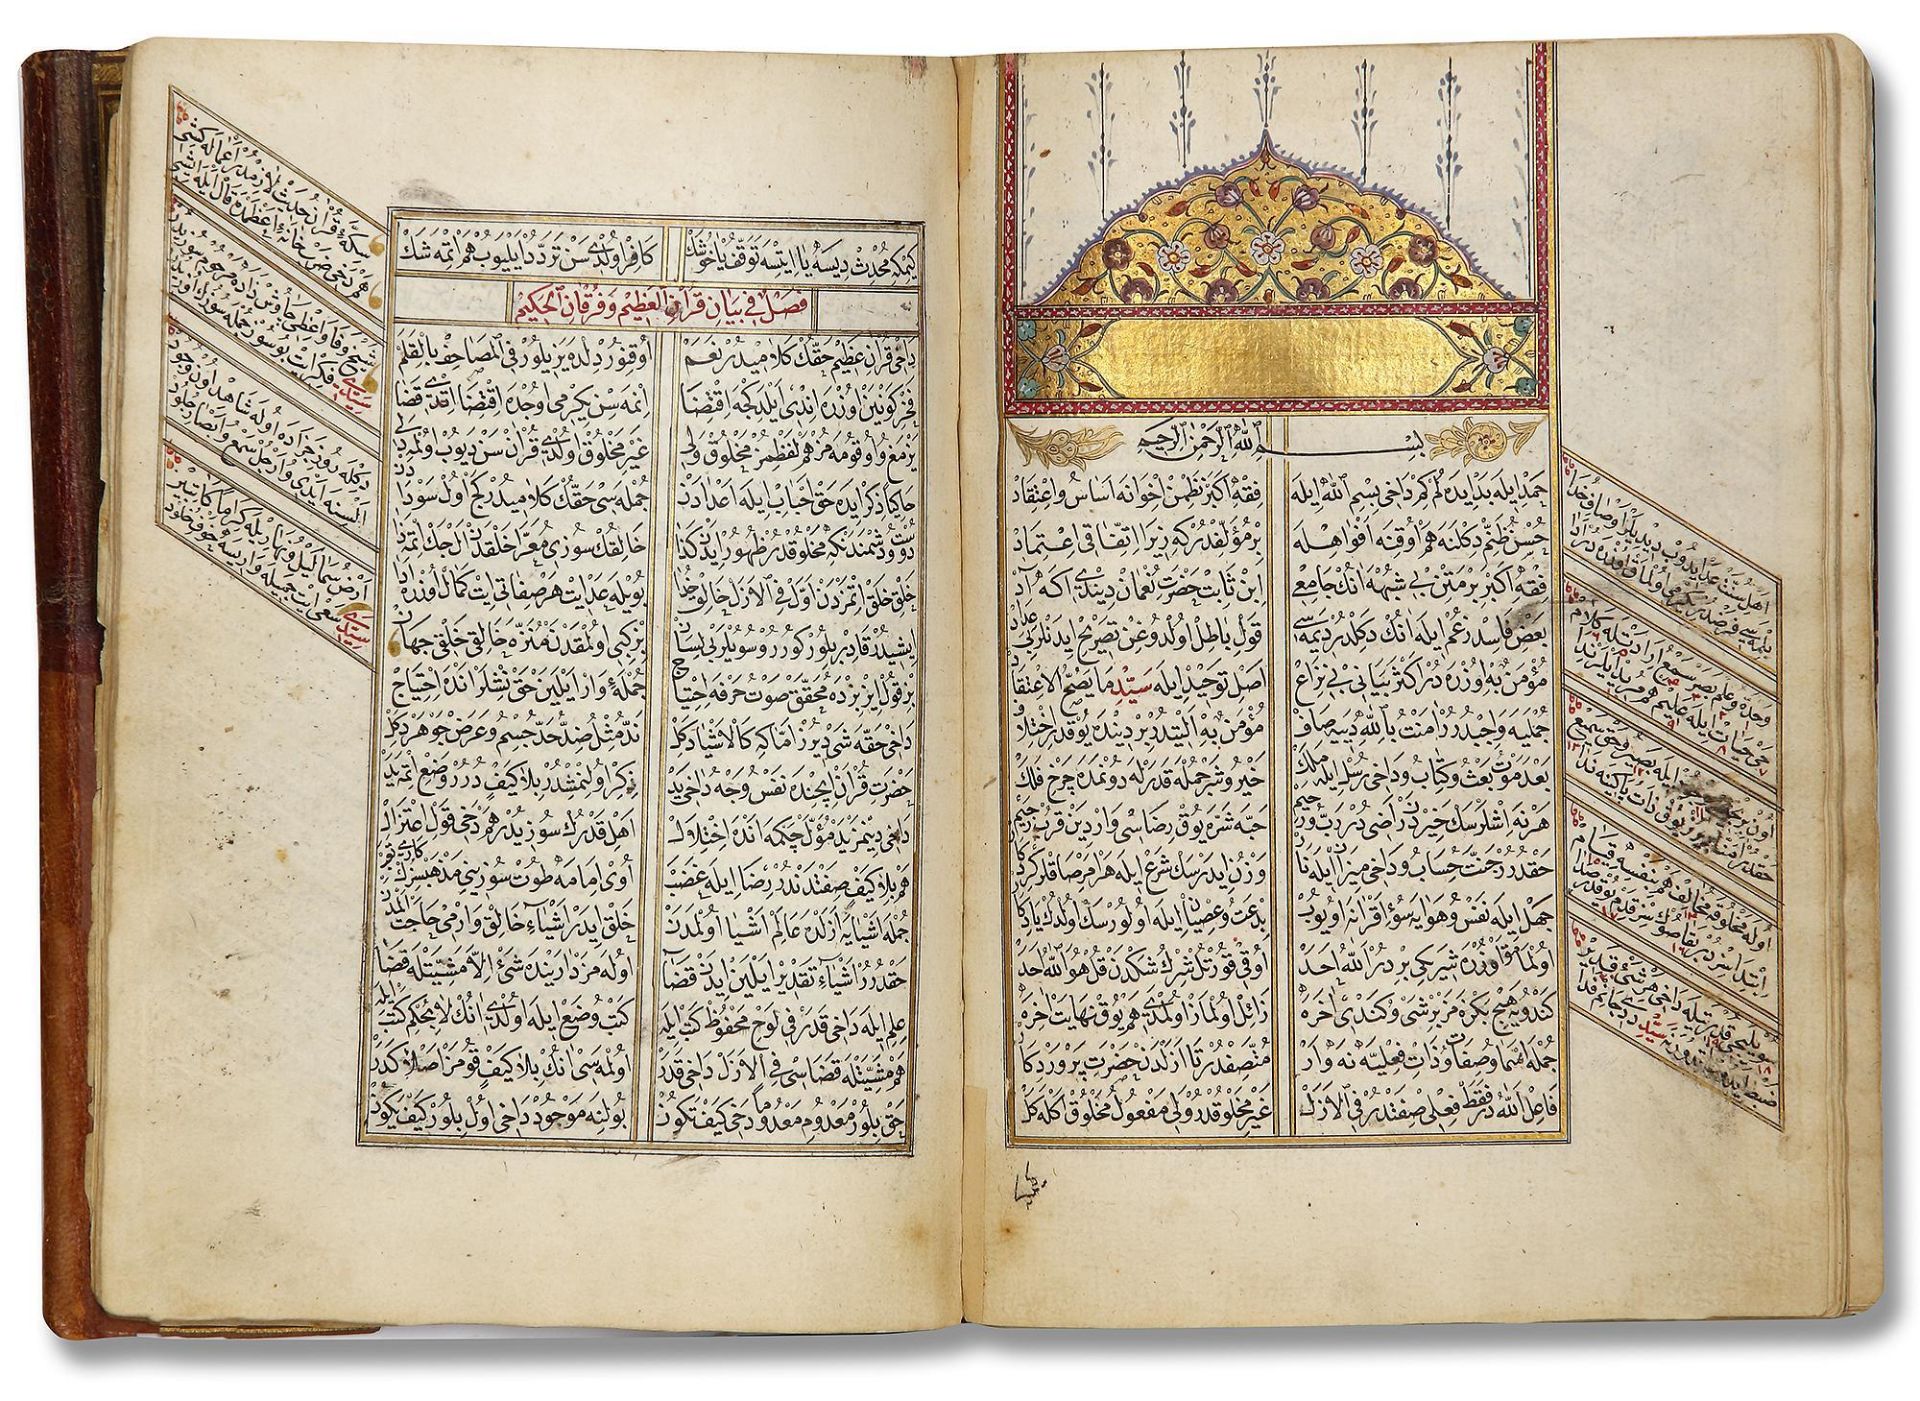 AN OTTOMAN MANUSCRIPT COPIED BY YUSUF IBN ABD AL-WAHHAB 1099 AH/1688 AD - Image 14 of 16